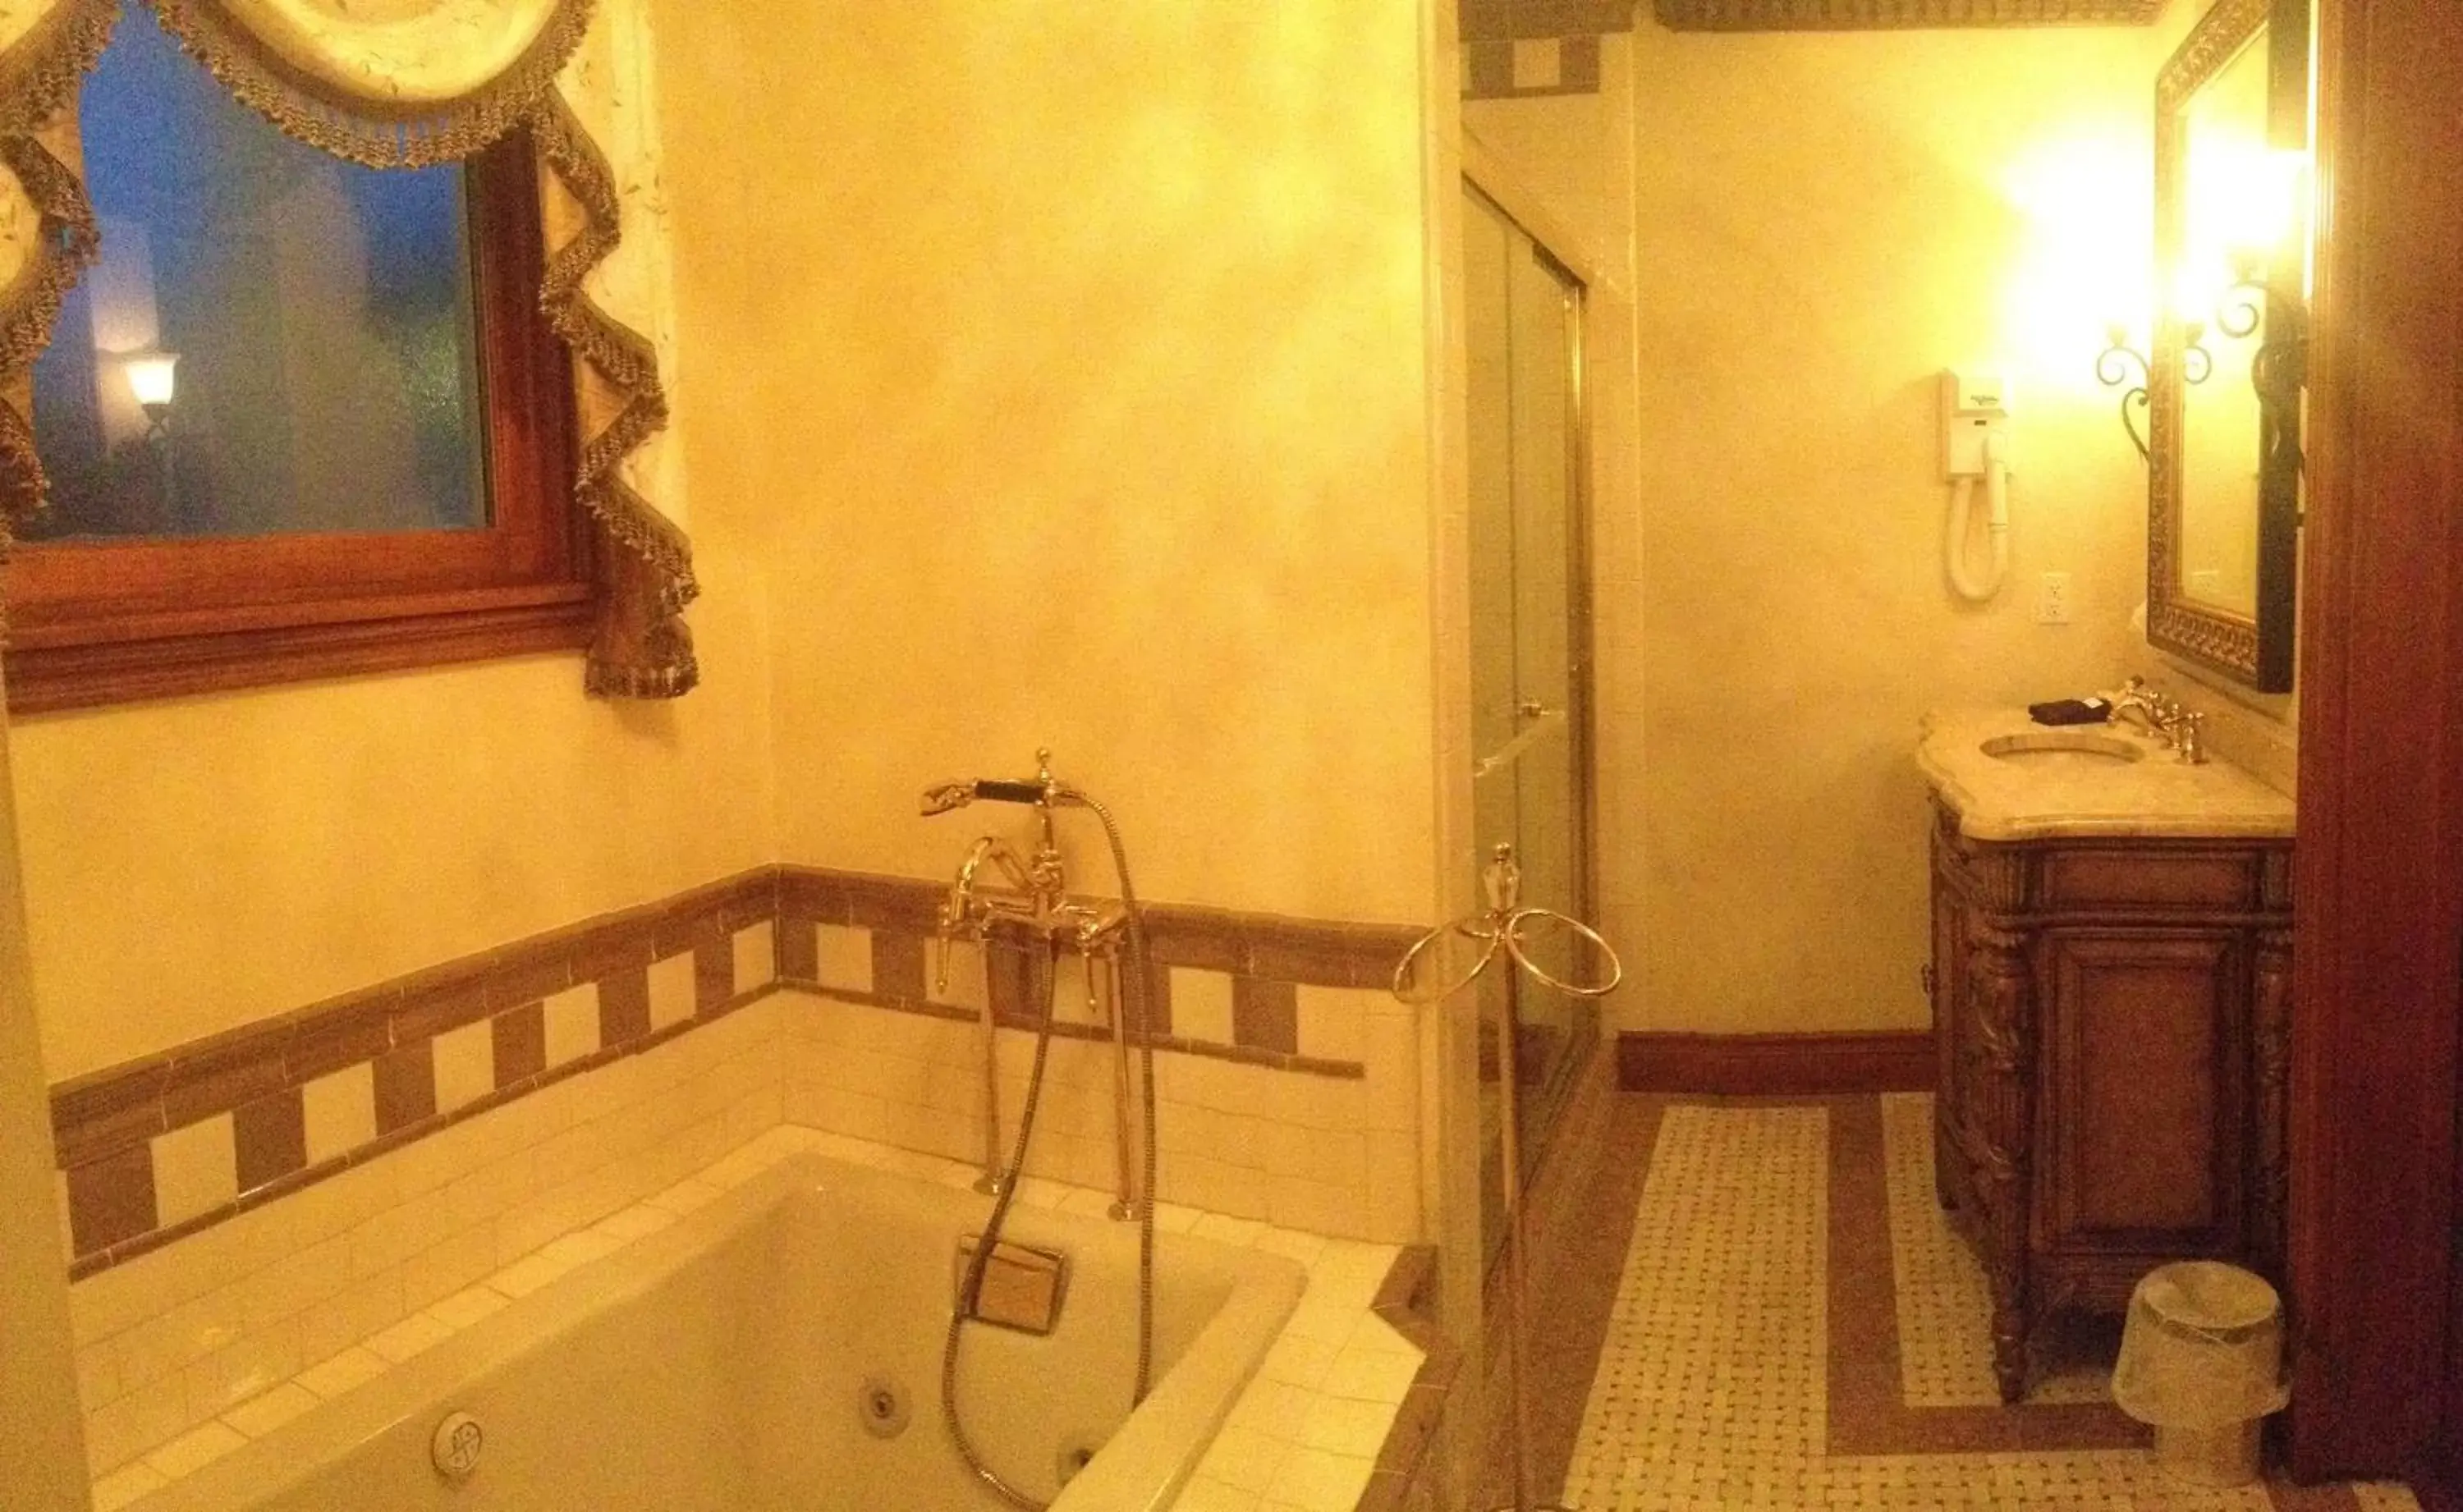 Bedroom, Bathroom in The Hotel Magnolia